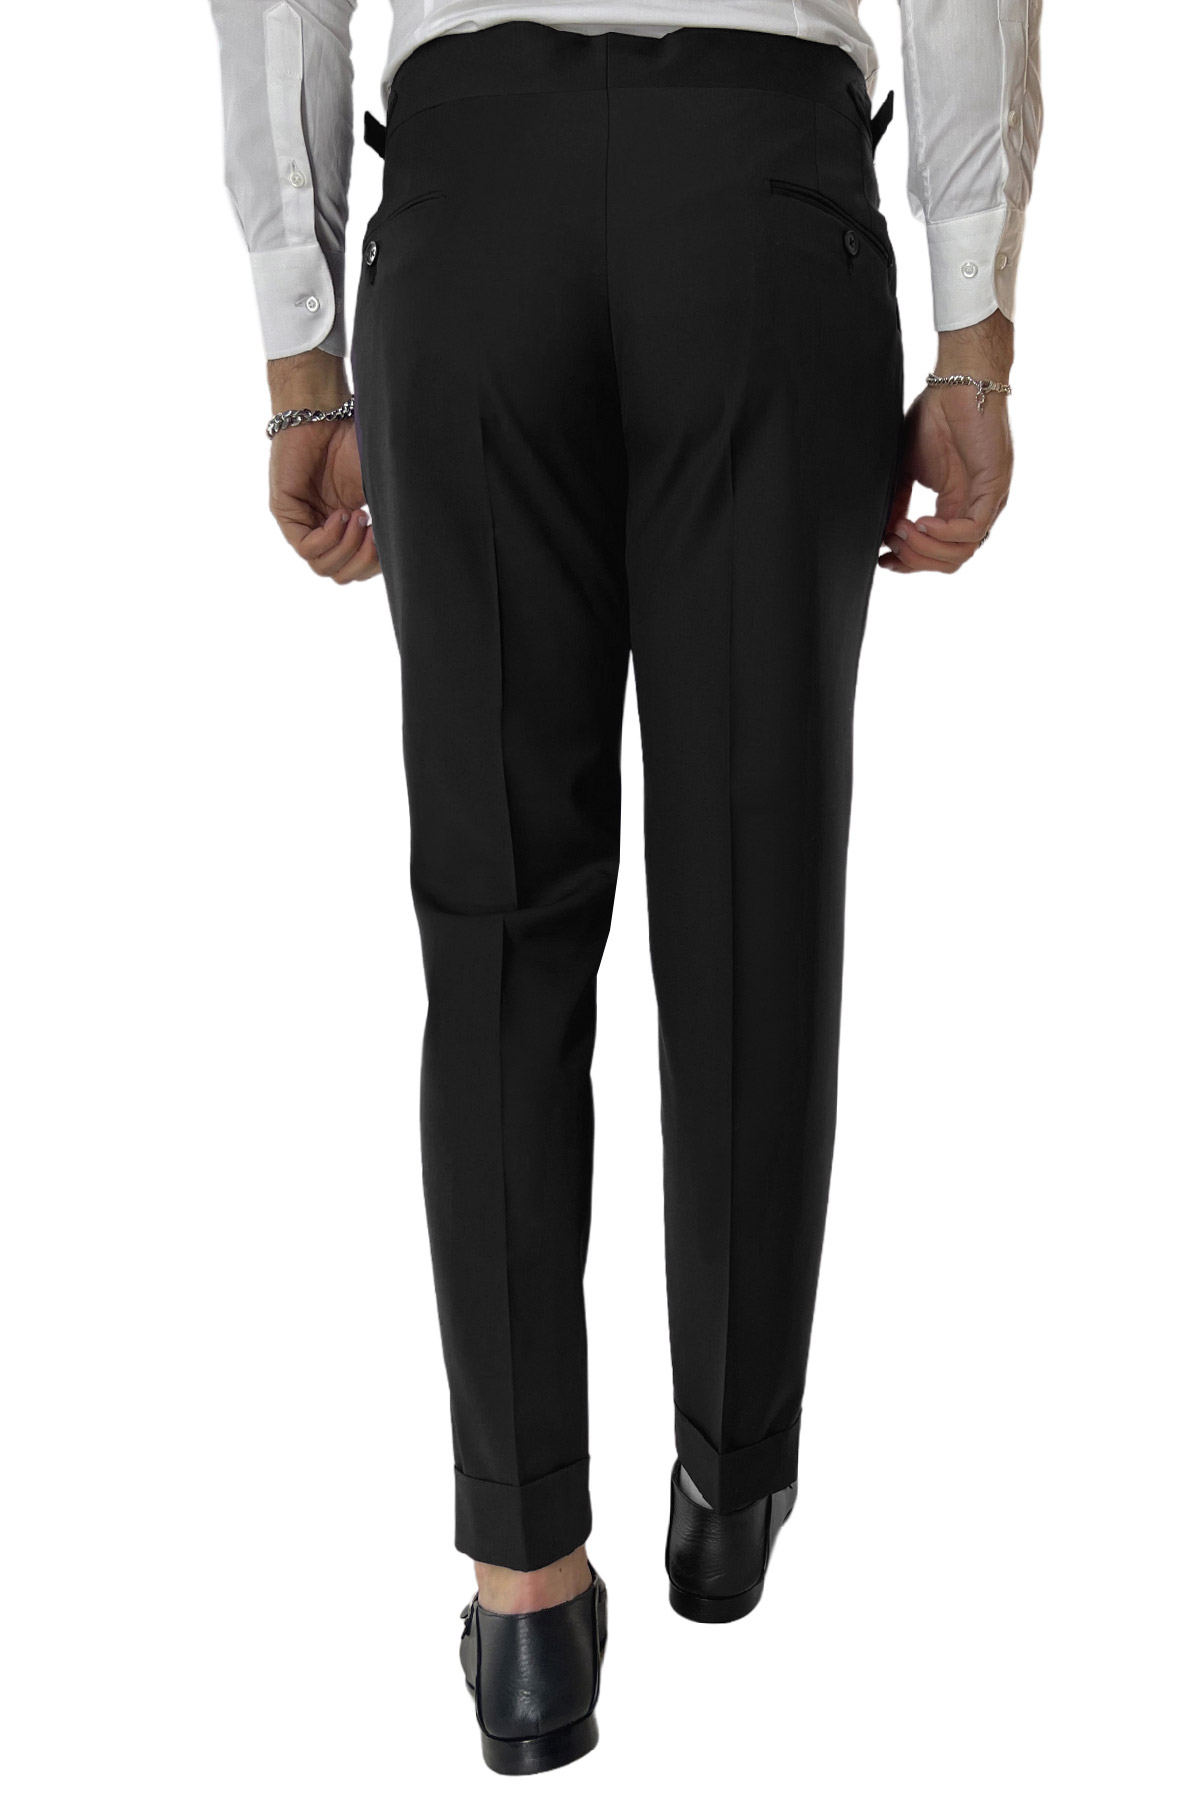 Pantalone uomo nero in fresco lana tinta unita vita alta con pinces fibbie laterali e risvolto 4cm